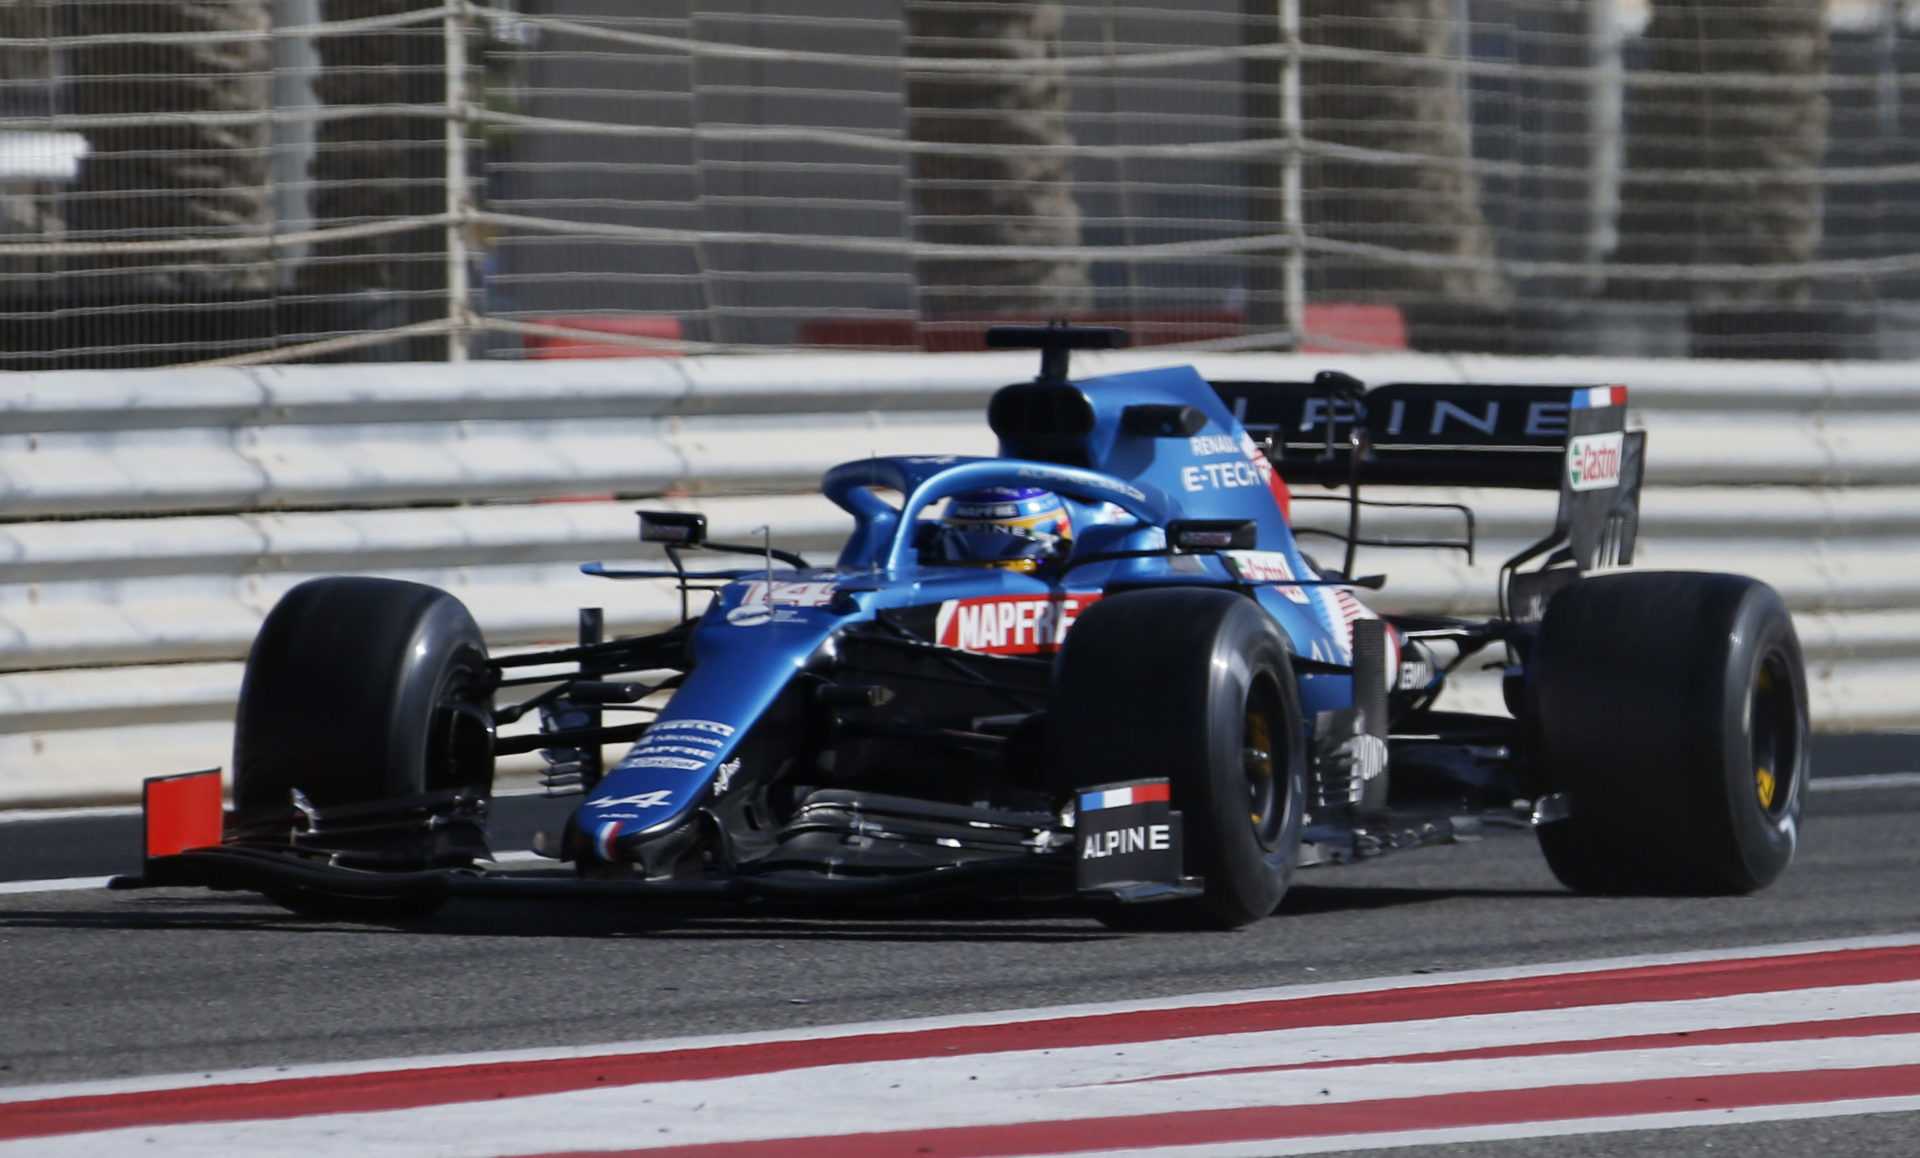 Fernando Alonso confirme que l'Alpine F1 n'a pas de voiture rapide avant le GP de Bahreïn